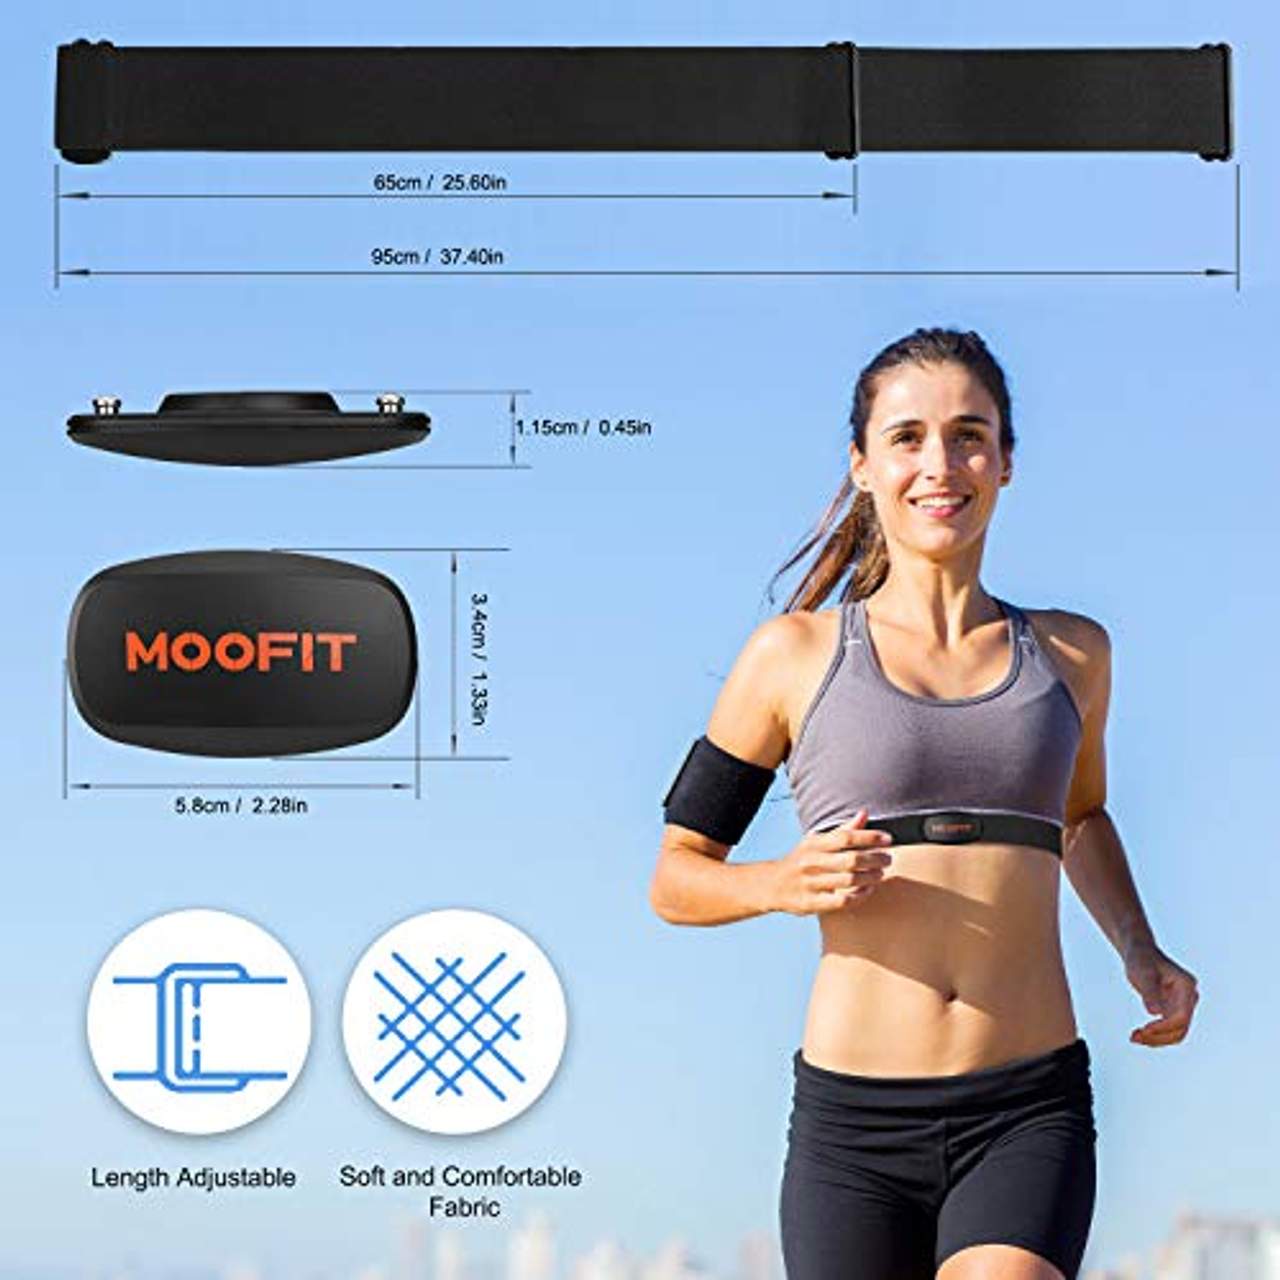 moofit ANT+ Bluetooth Herzfrequenzmesser Brustgurt IP67 Wasserdicht